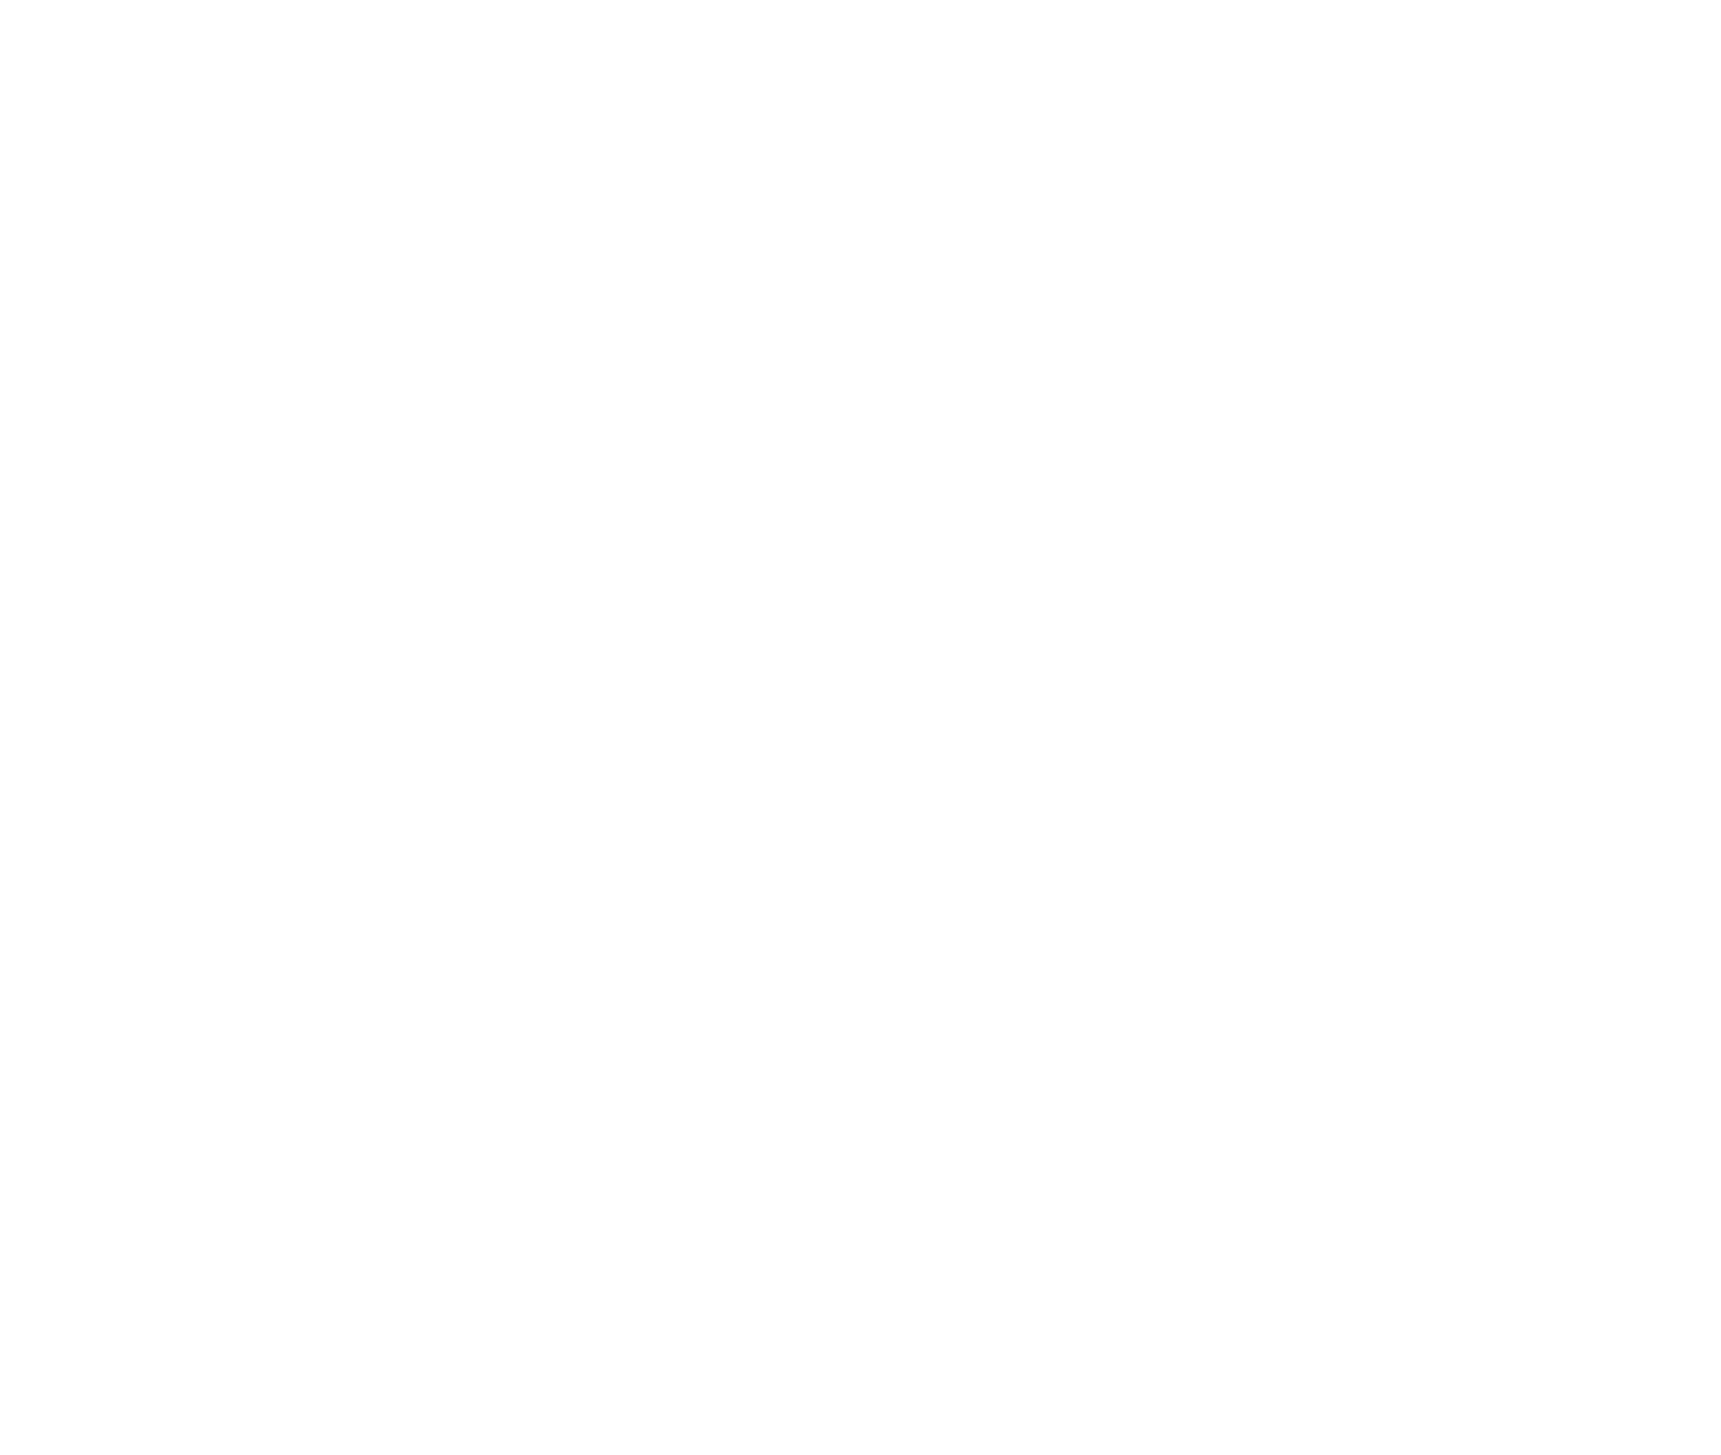 Bally's Corporation logo pour fonds sombres (PNG transparent)